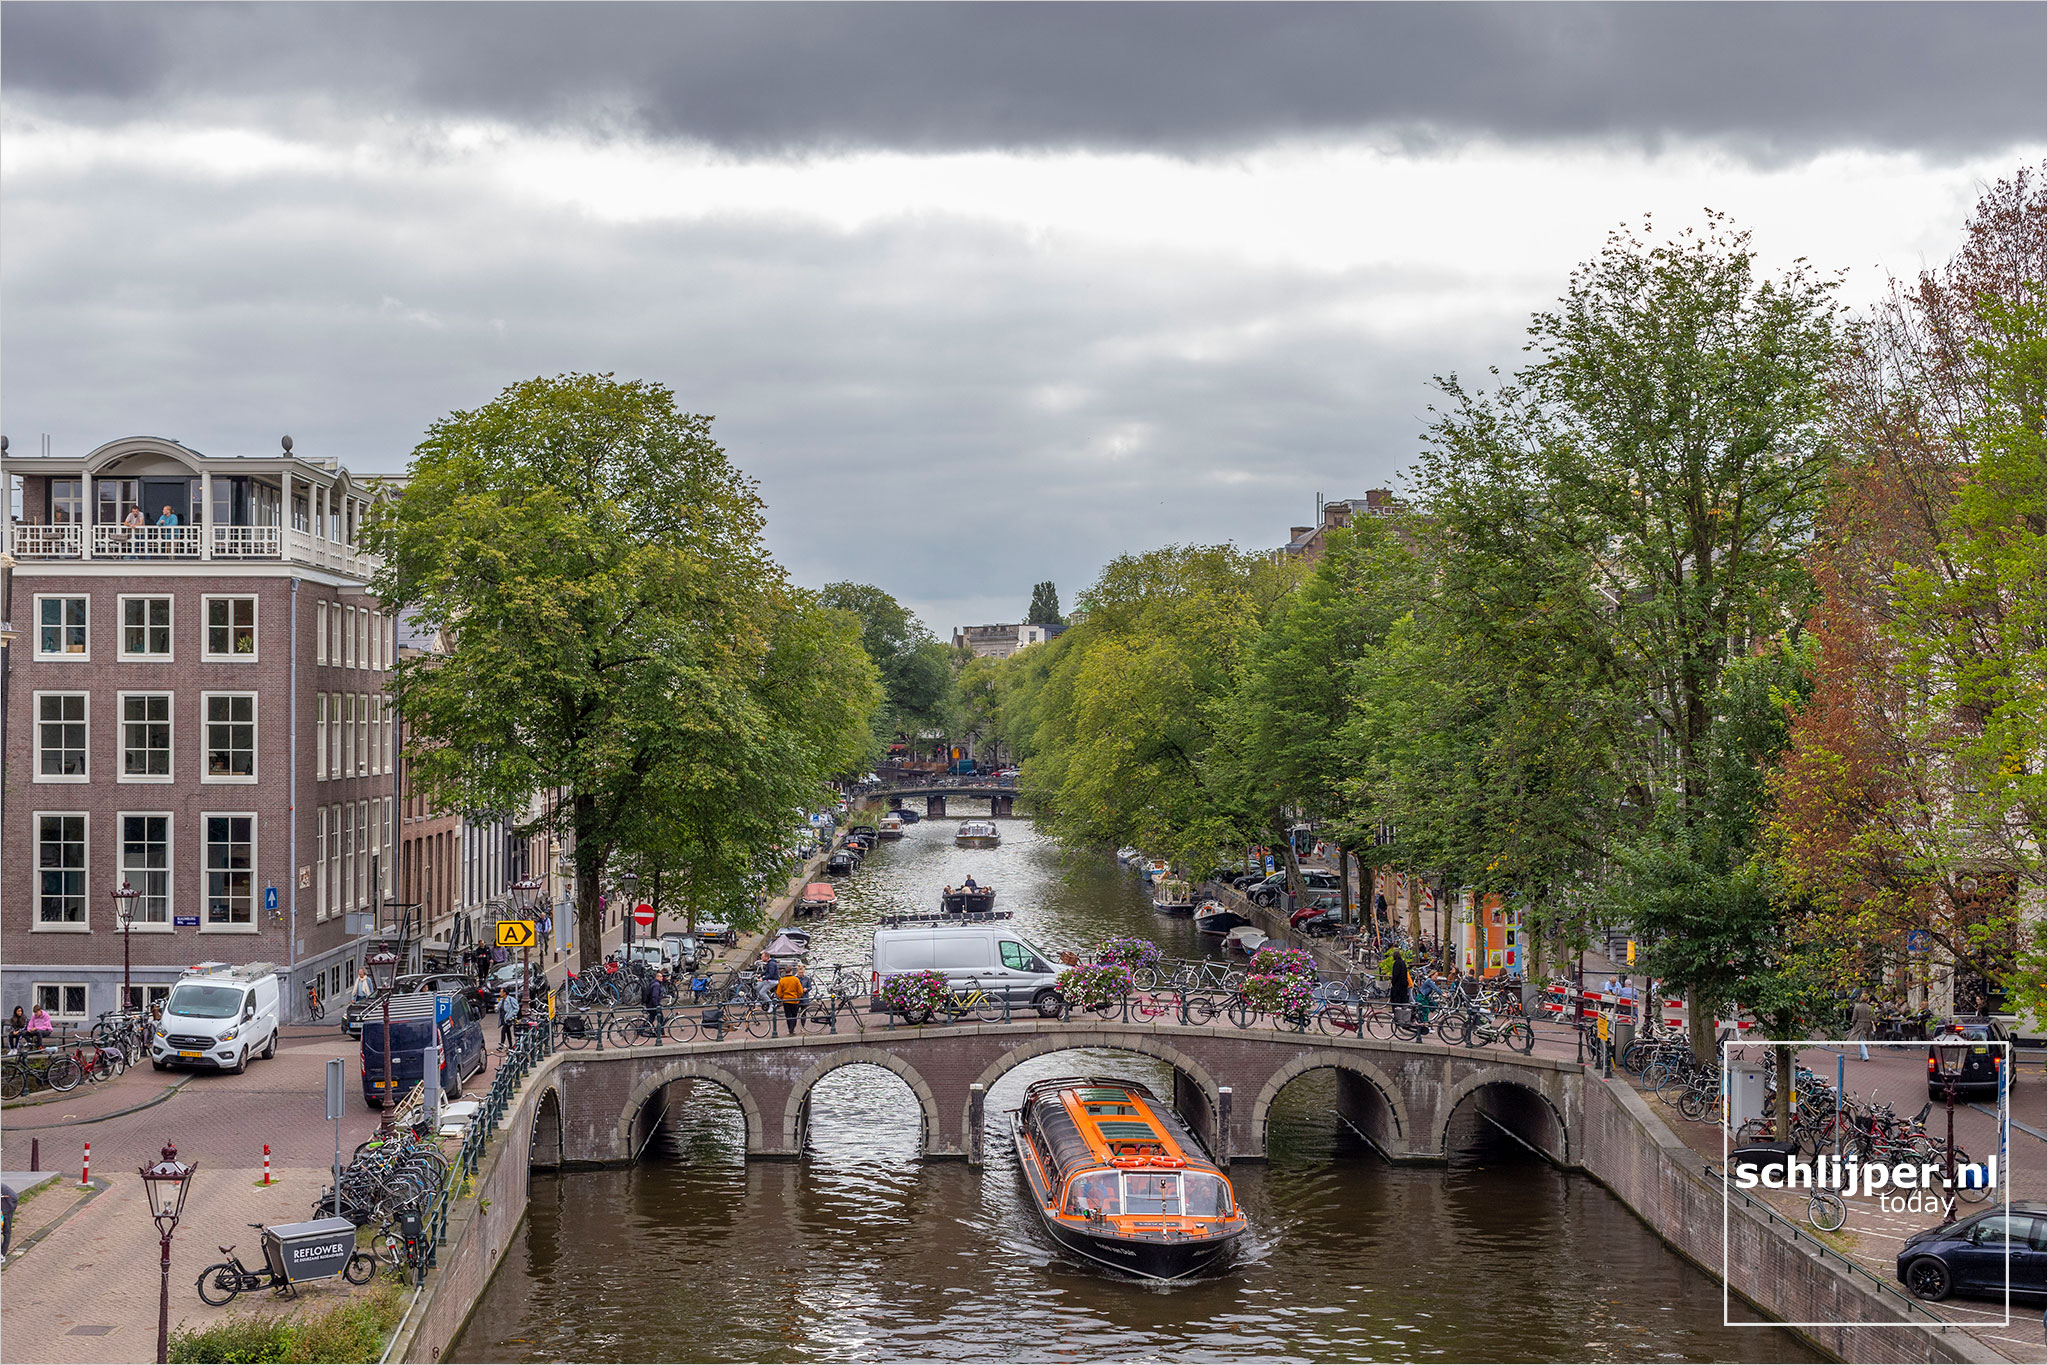 The Netherlands, Amsterdam, 1 september 2021